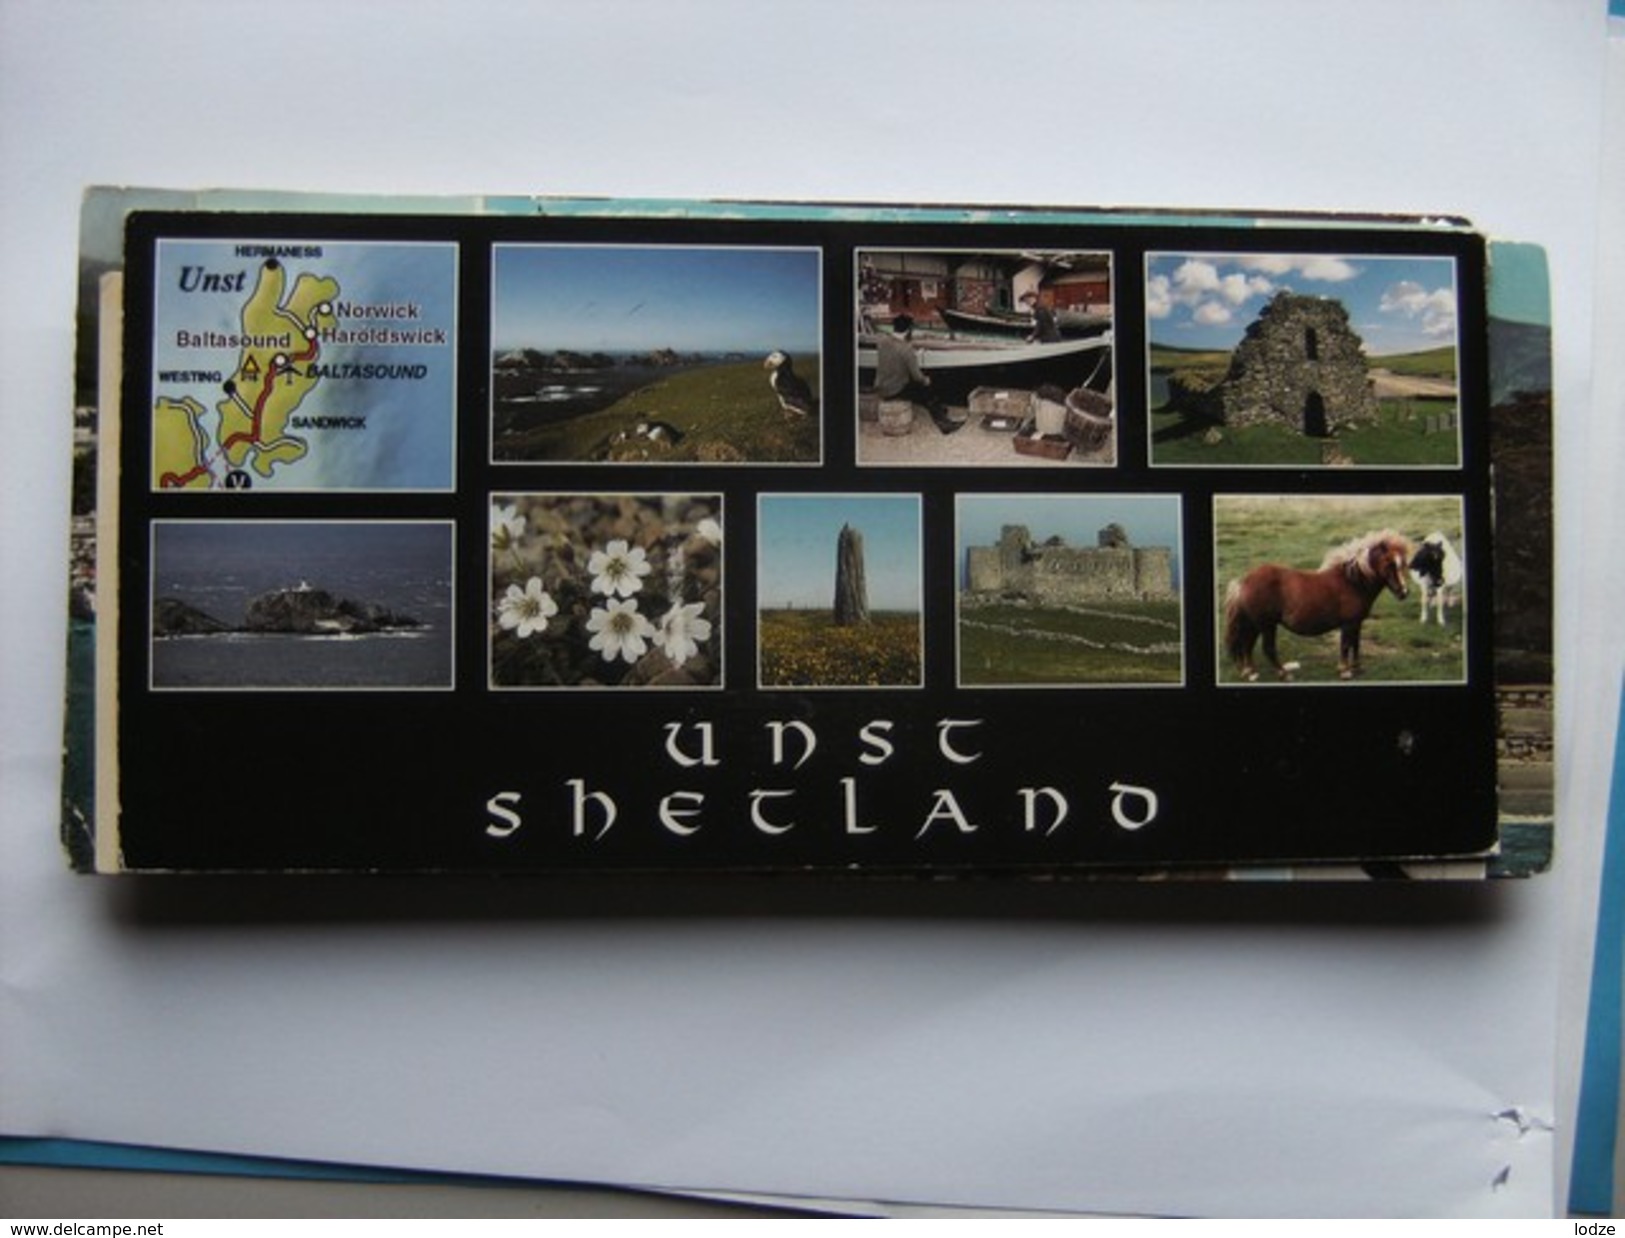 Shetland Unst Baltasound - Shetland